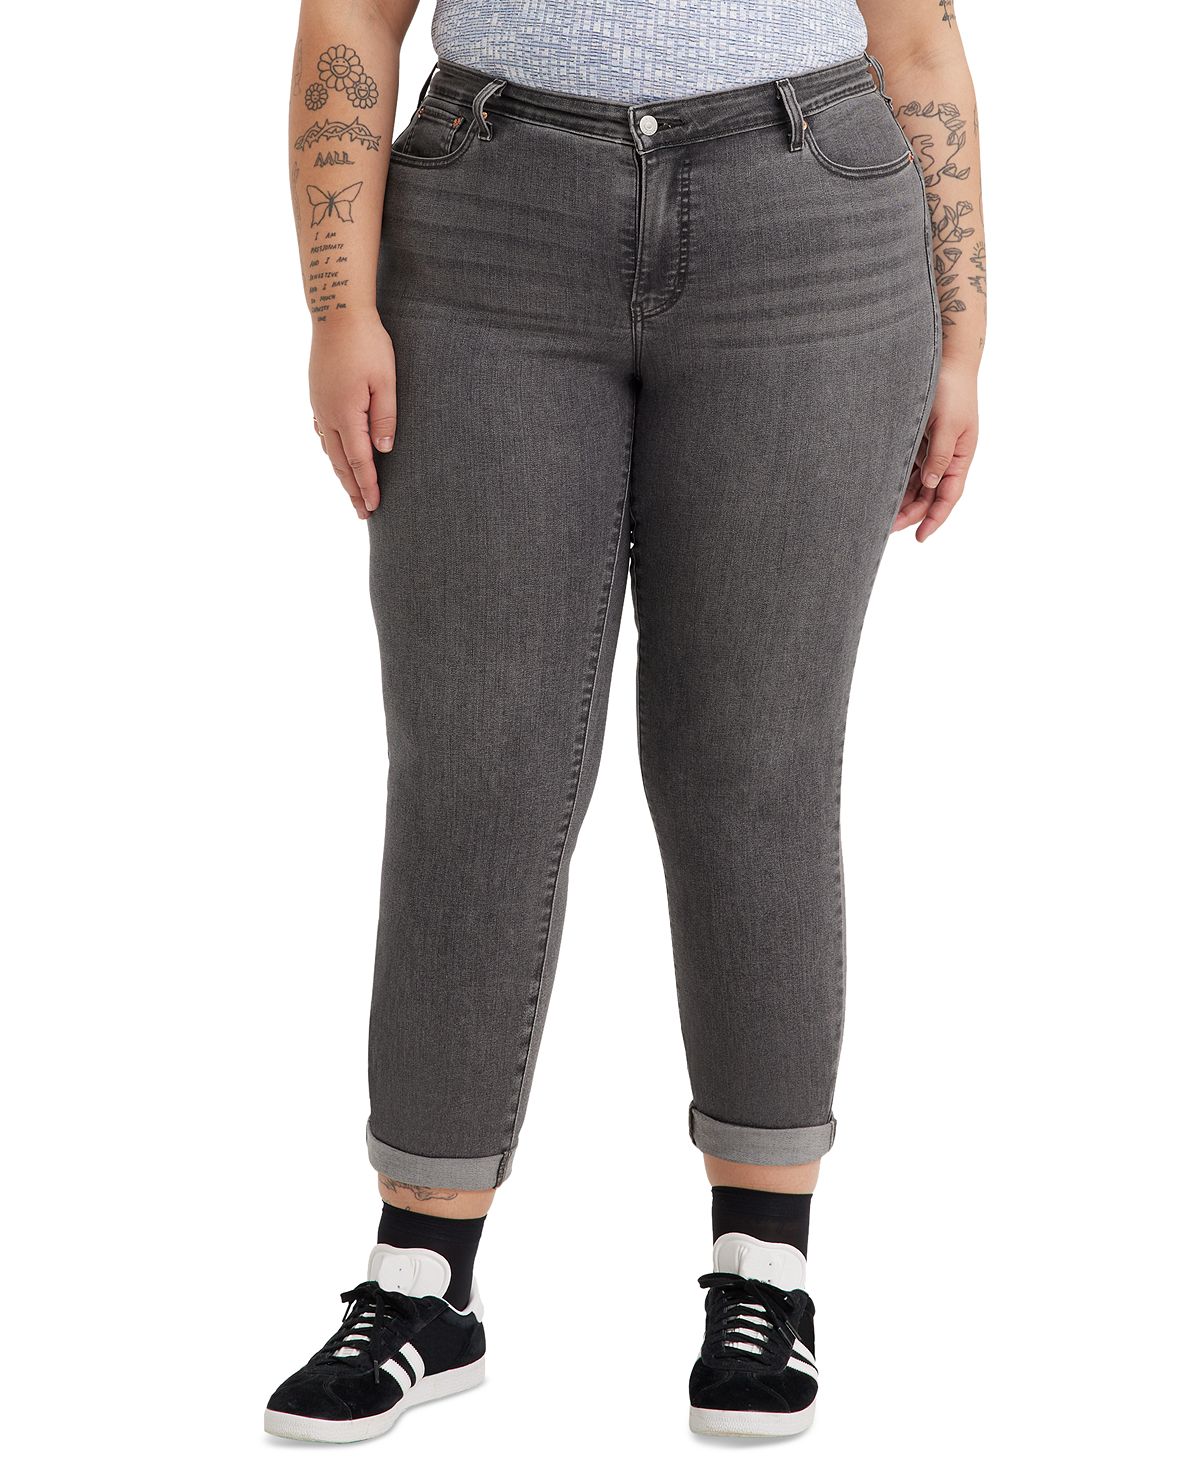 Модные джинсы-бойфренды больших размеров Levi's джинсы reserved модные 40 размер